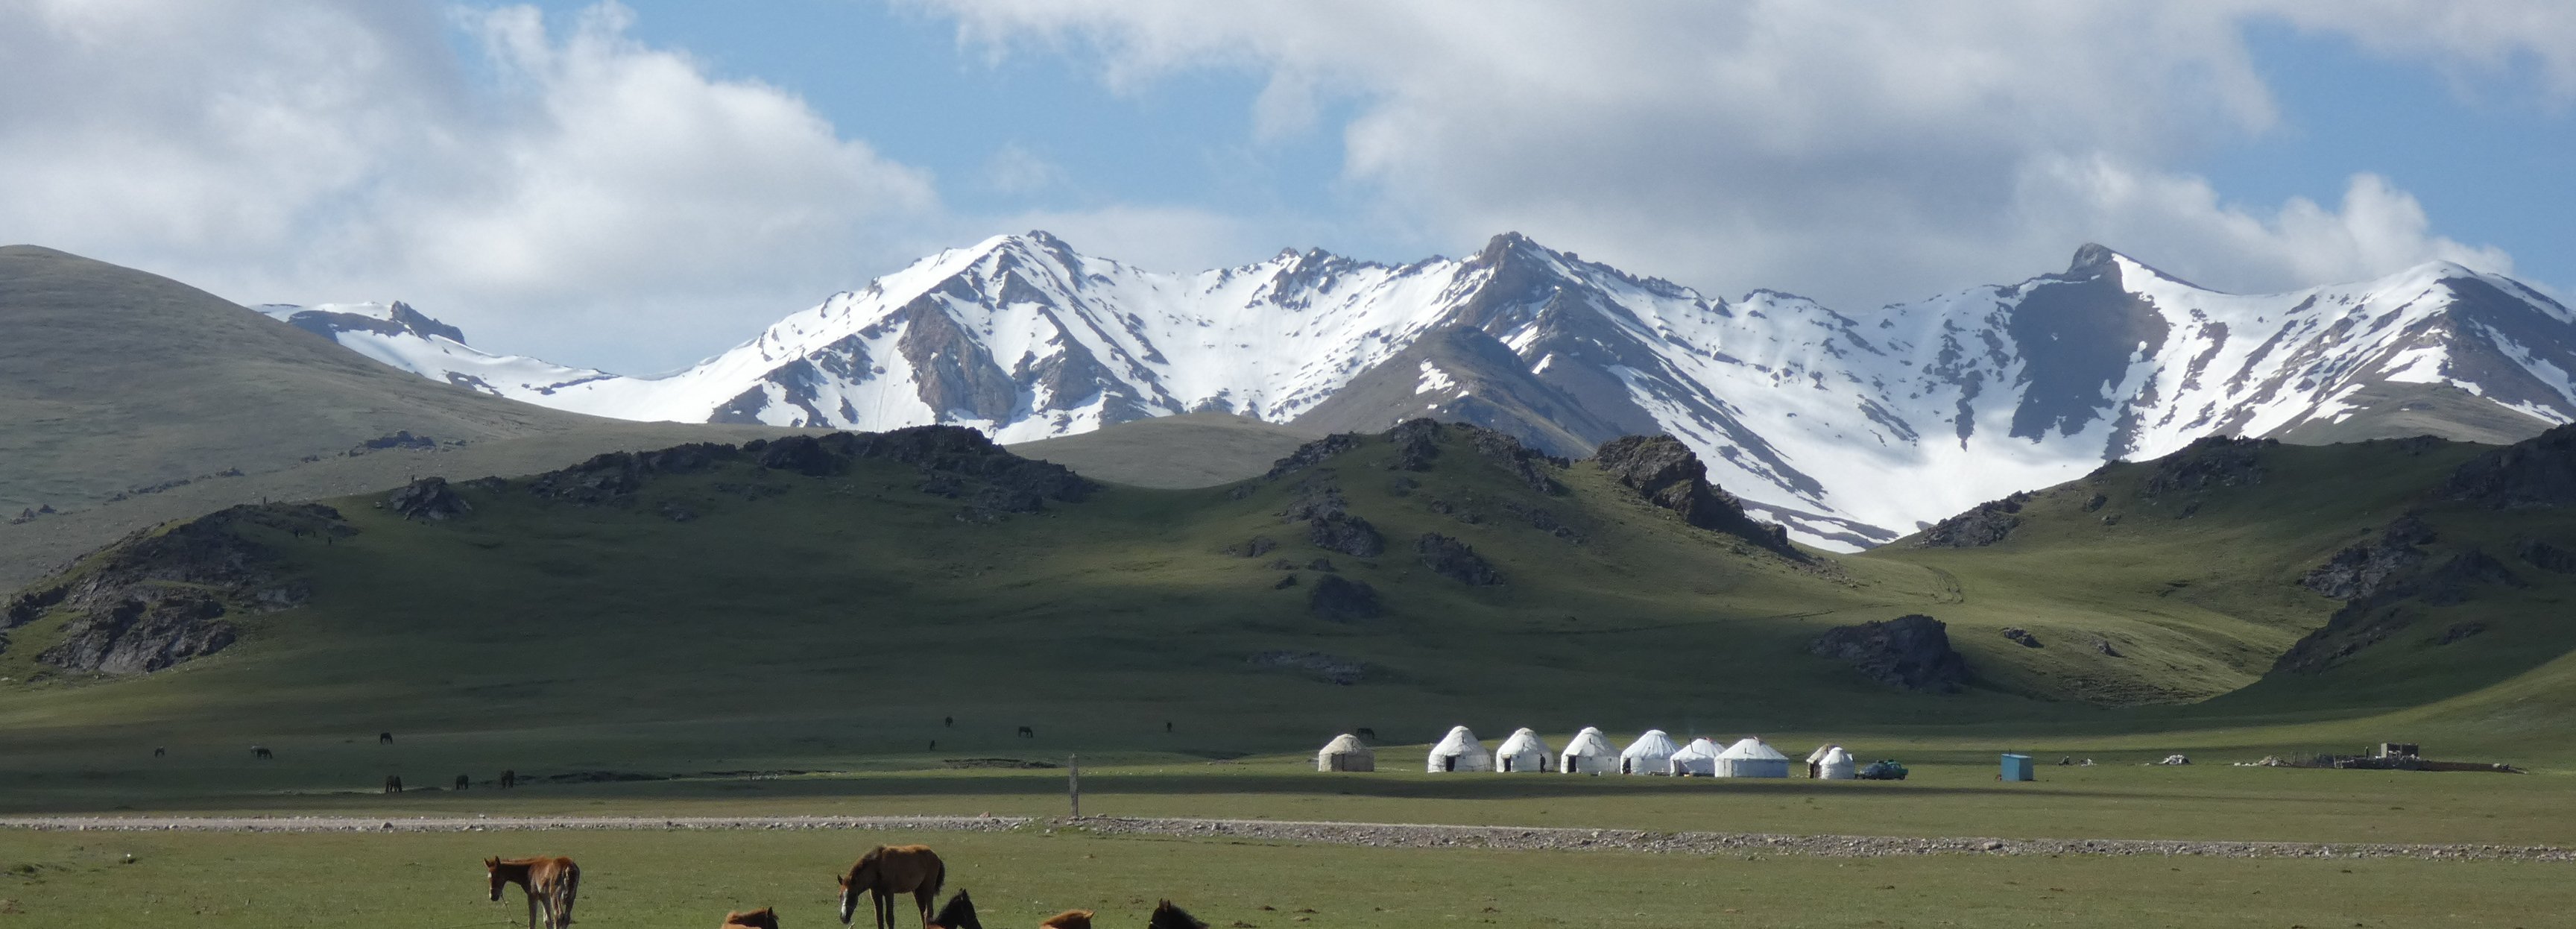 Explore Ortaklığı ile Kırgızistan İpekyolu Turu